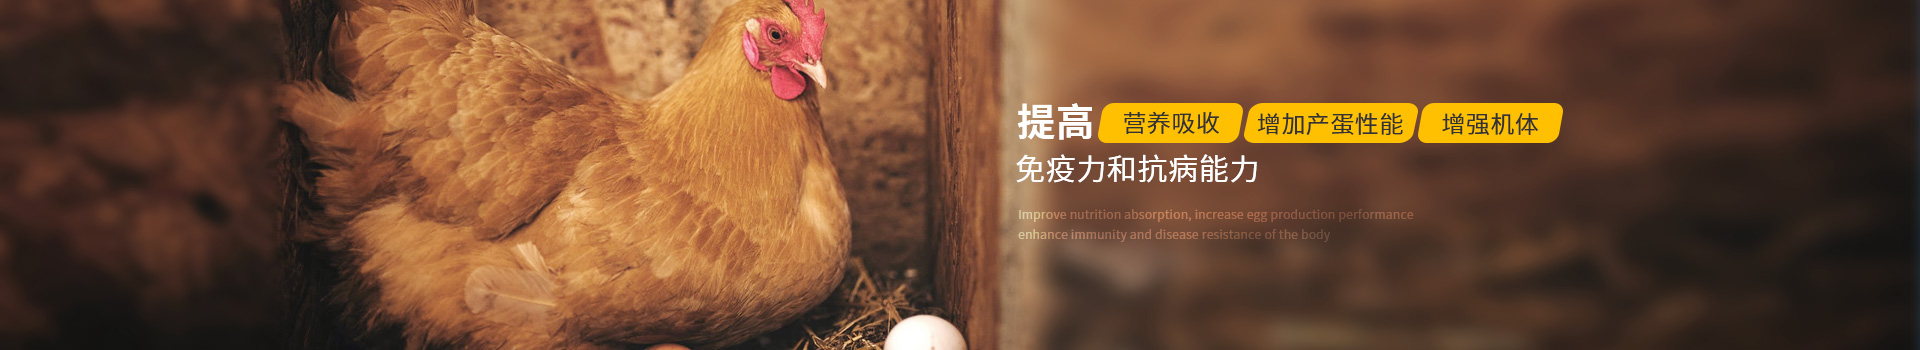 蛋禽用药：提高营养吸收、增加产蛋性能、增强机体